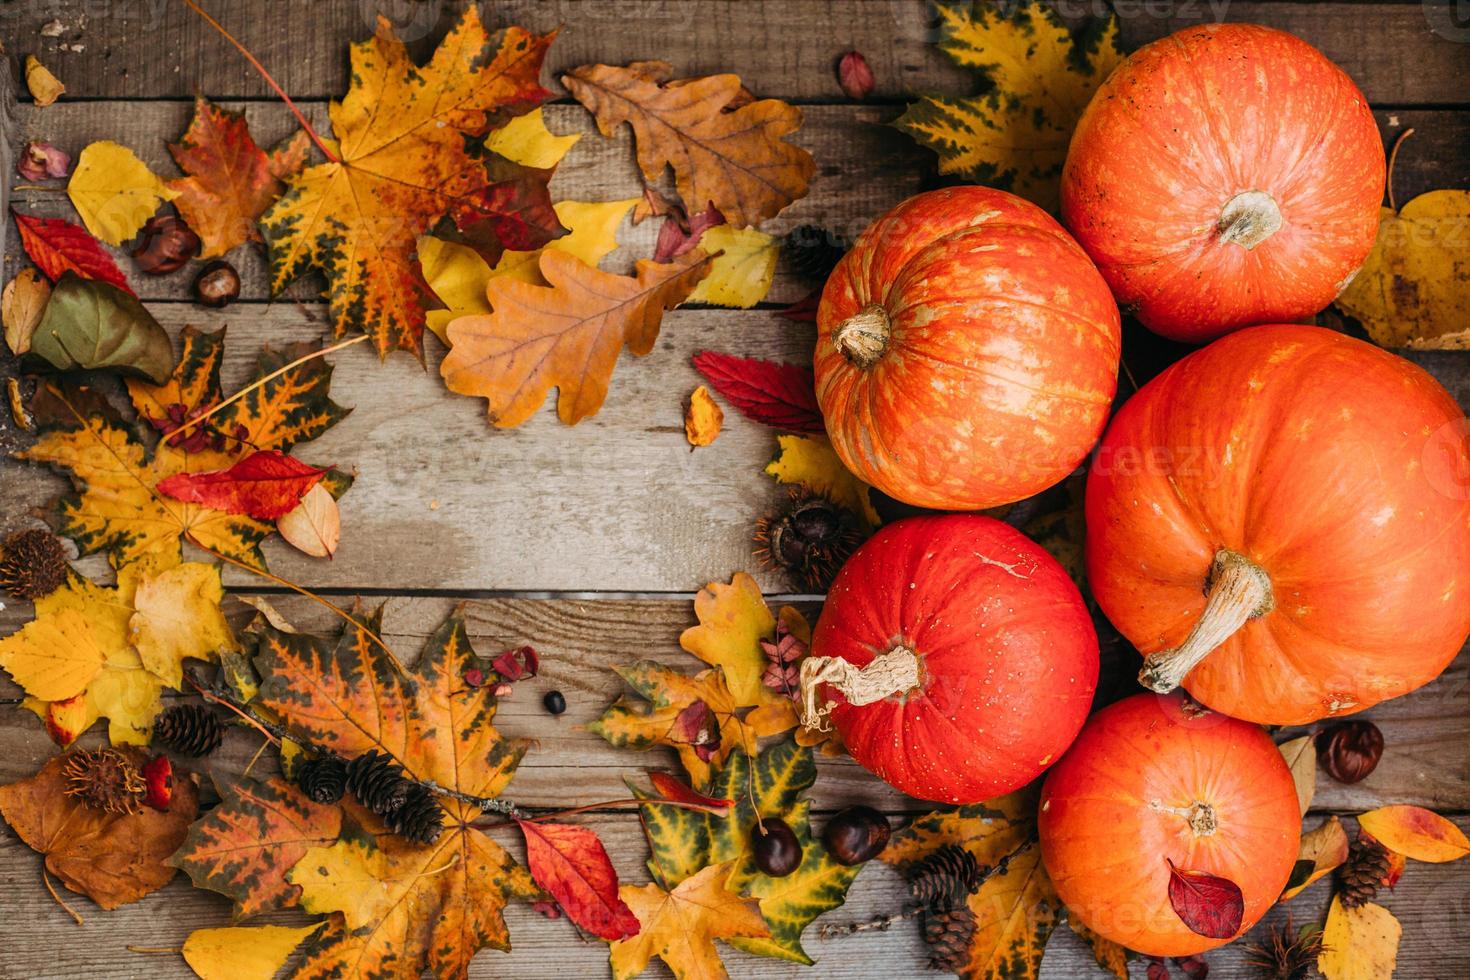 calabazas con hojas de otoño sobre fondo de madera. calabazas naranjas de halloween en composición de otoño. foto